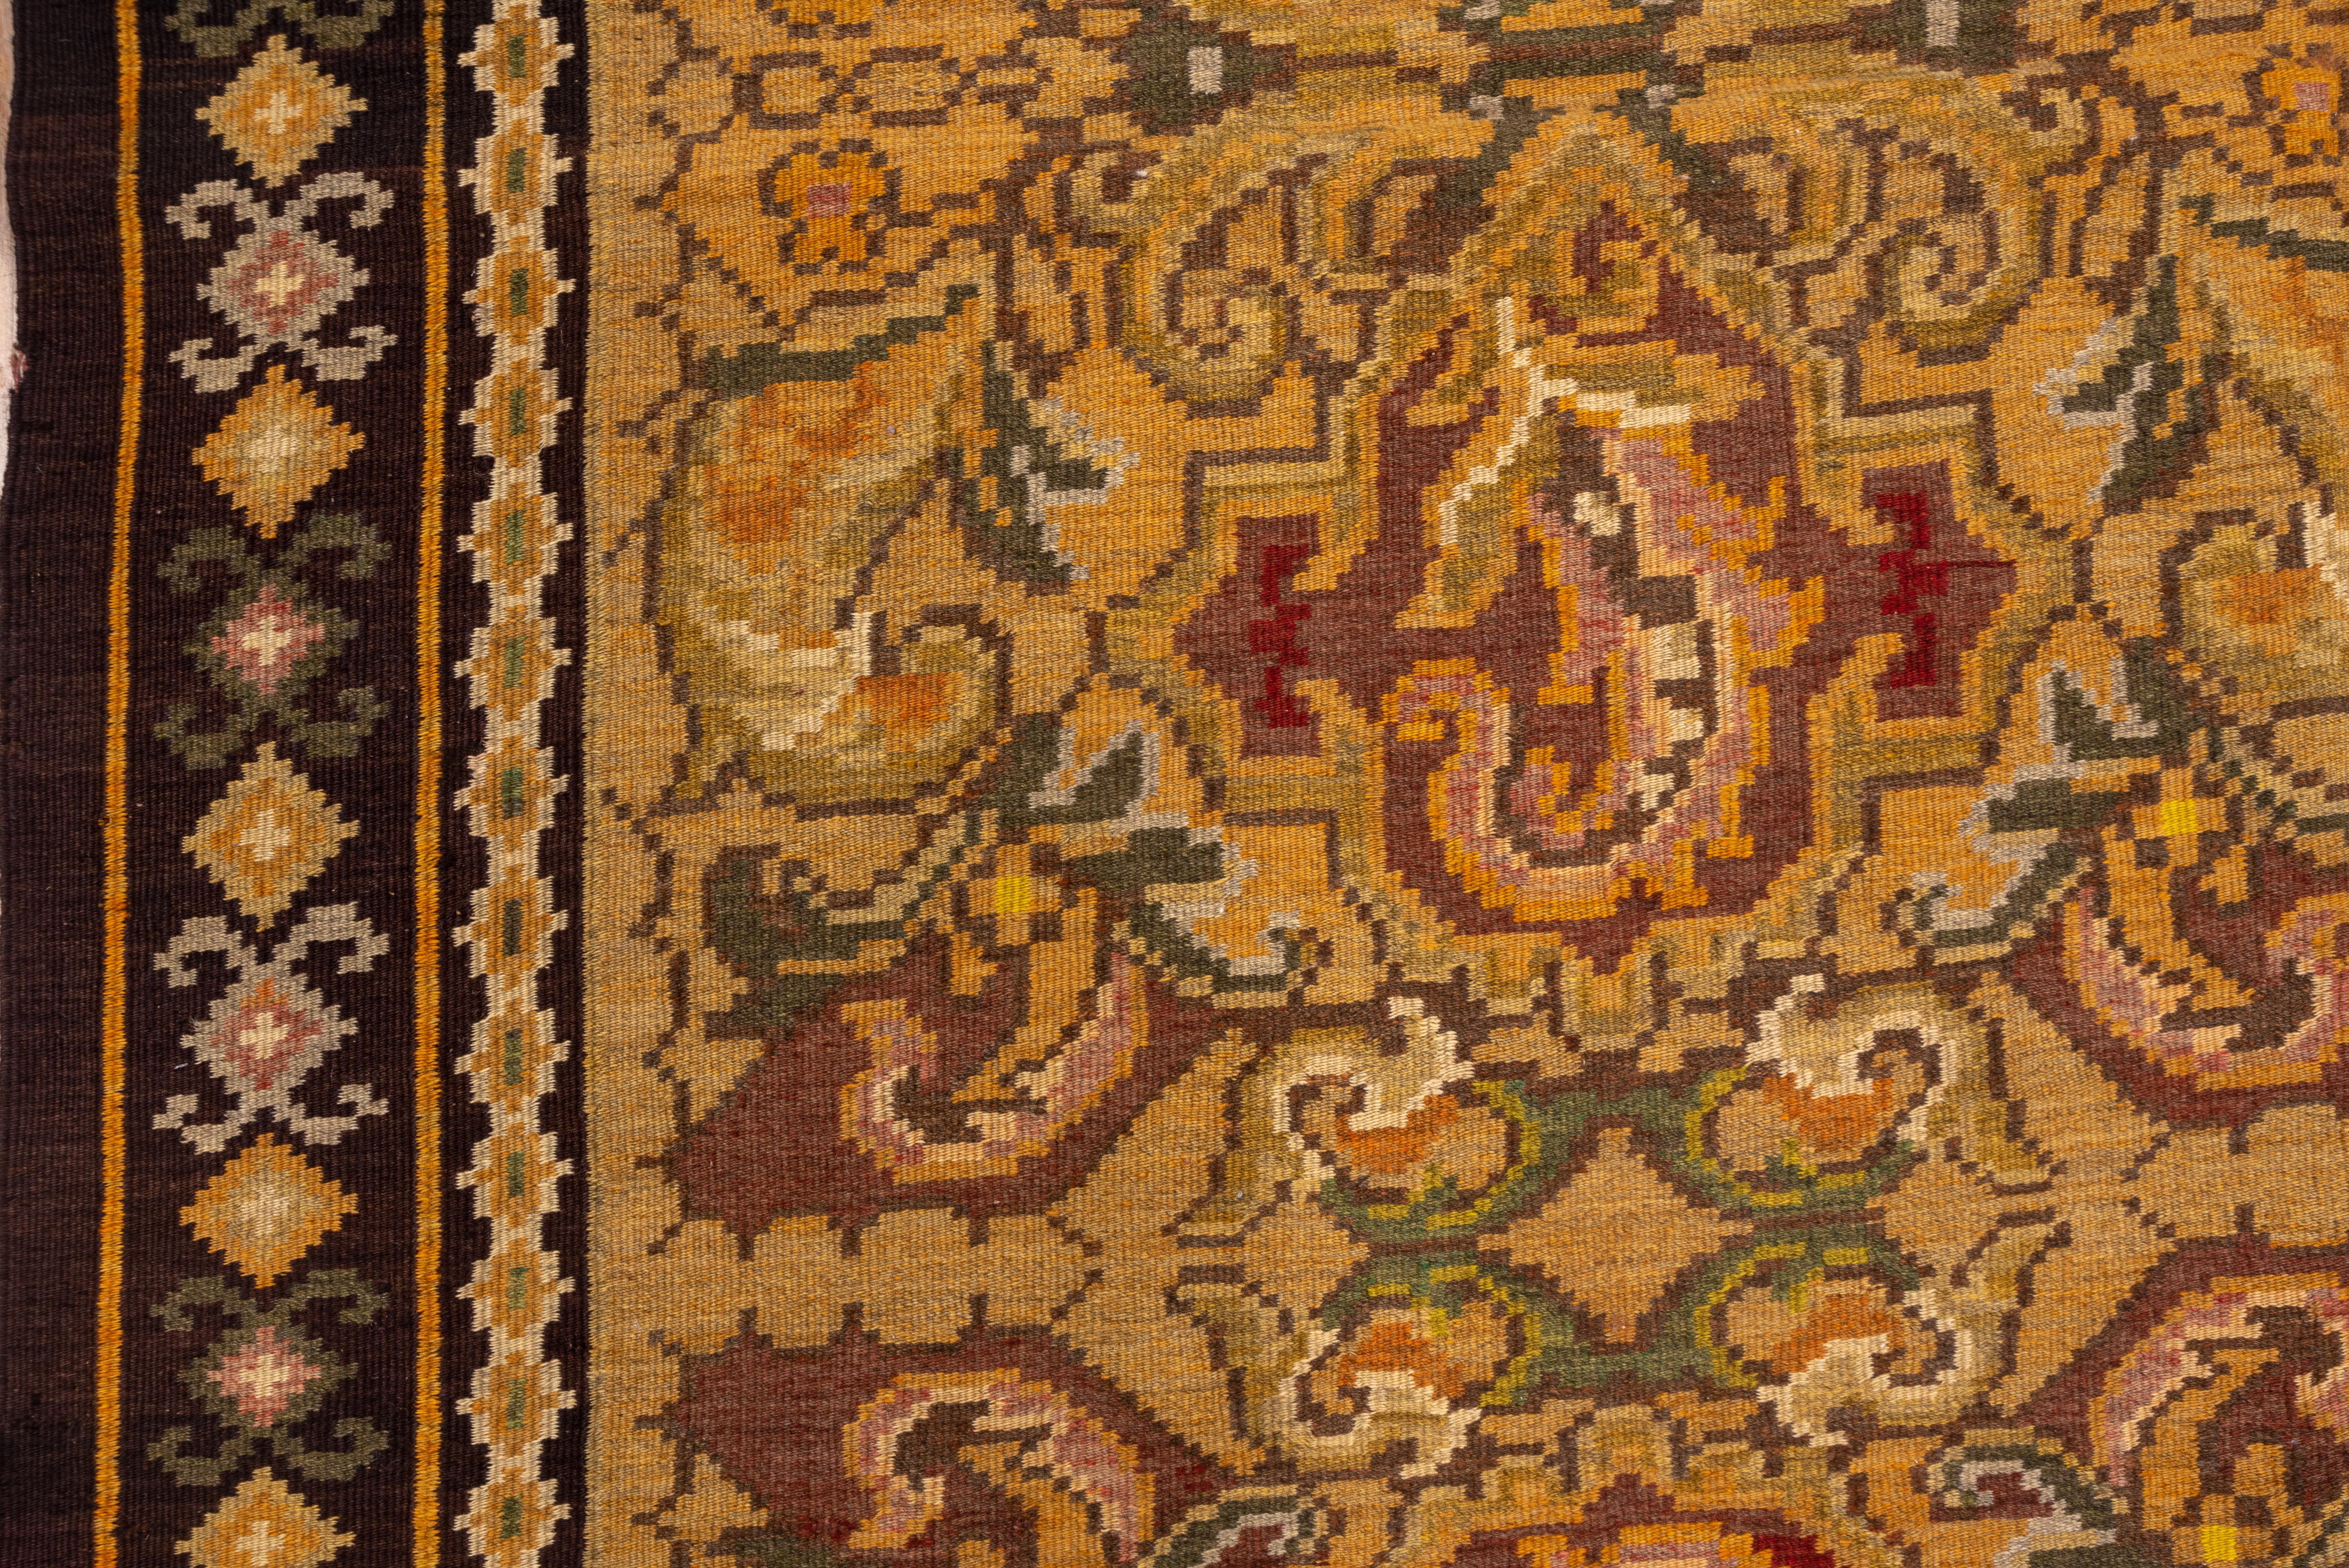 Ce tapis en tapisserie kilim de Russie méridionale présente un champ de couleur beige doré avec un motif en trois échelons de cartouches et de formes de feuilles barbelées détaillées dans les tons sienne, crème et saumon. Bordure en terre de Sienne